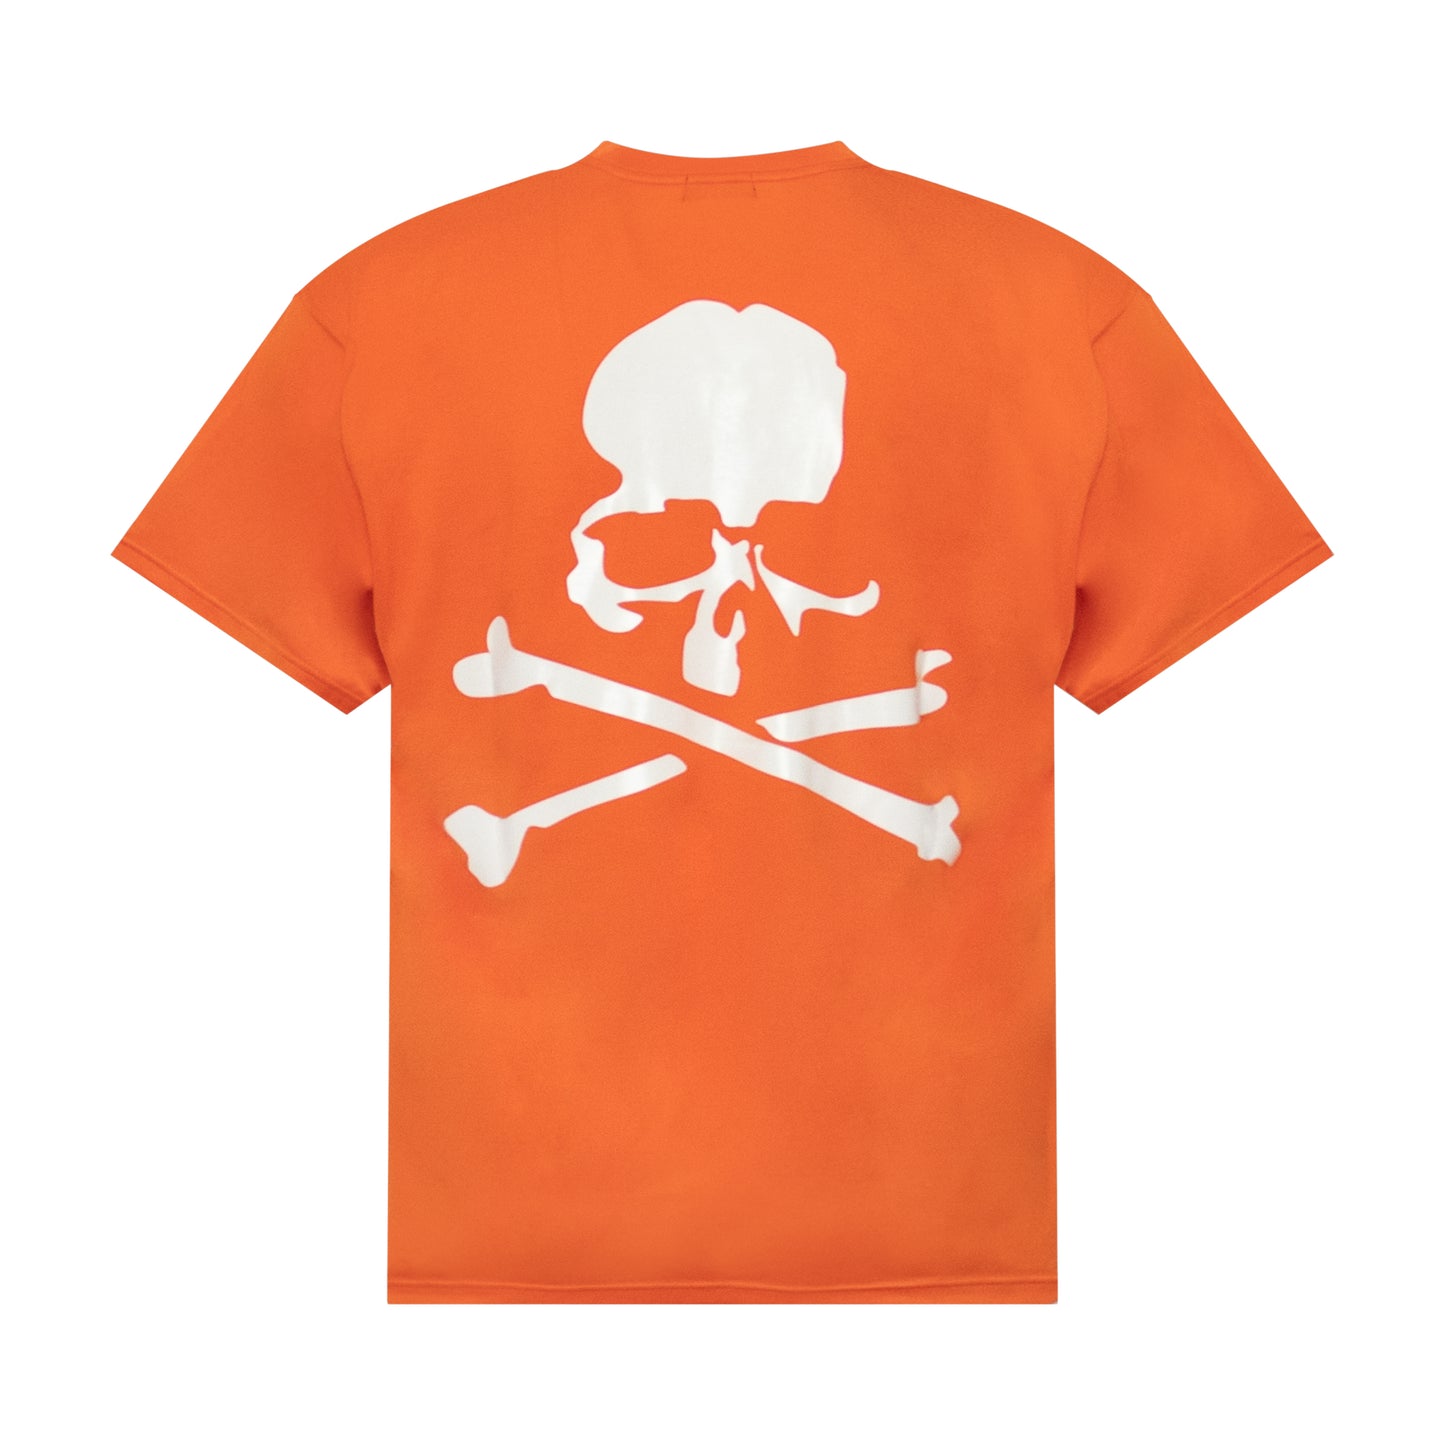 Mastermind World T-Shirt in Orange